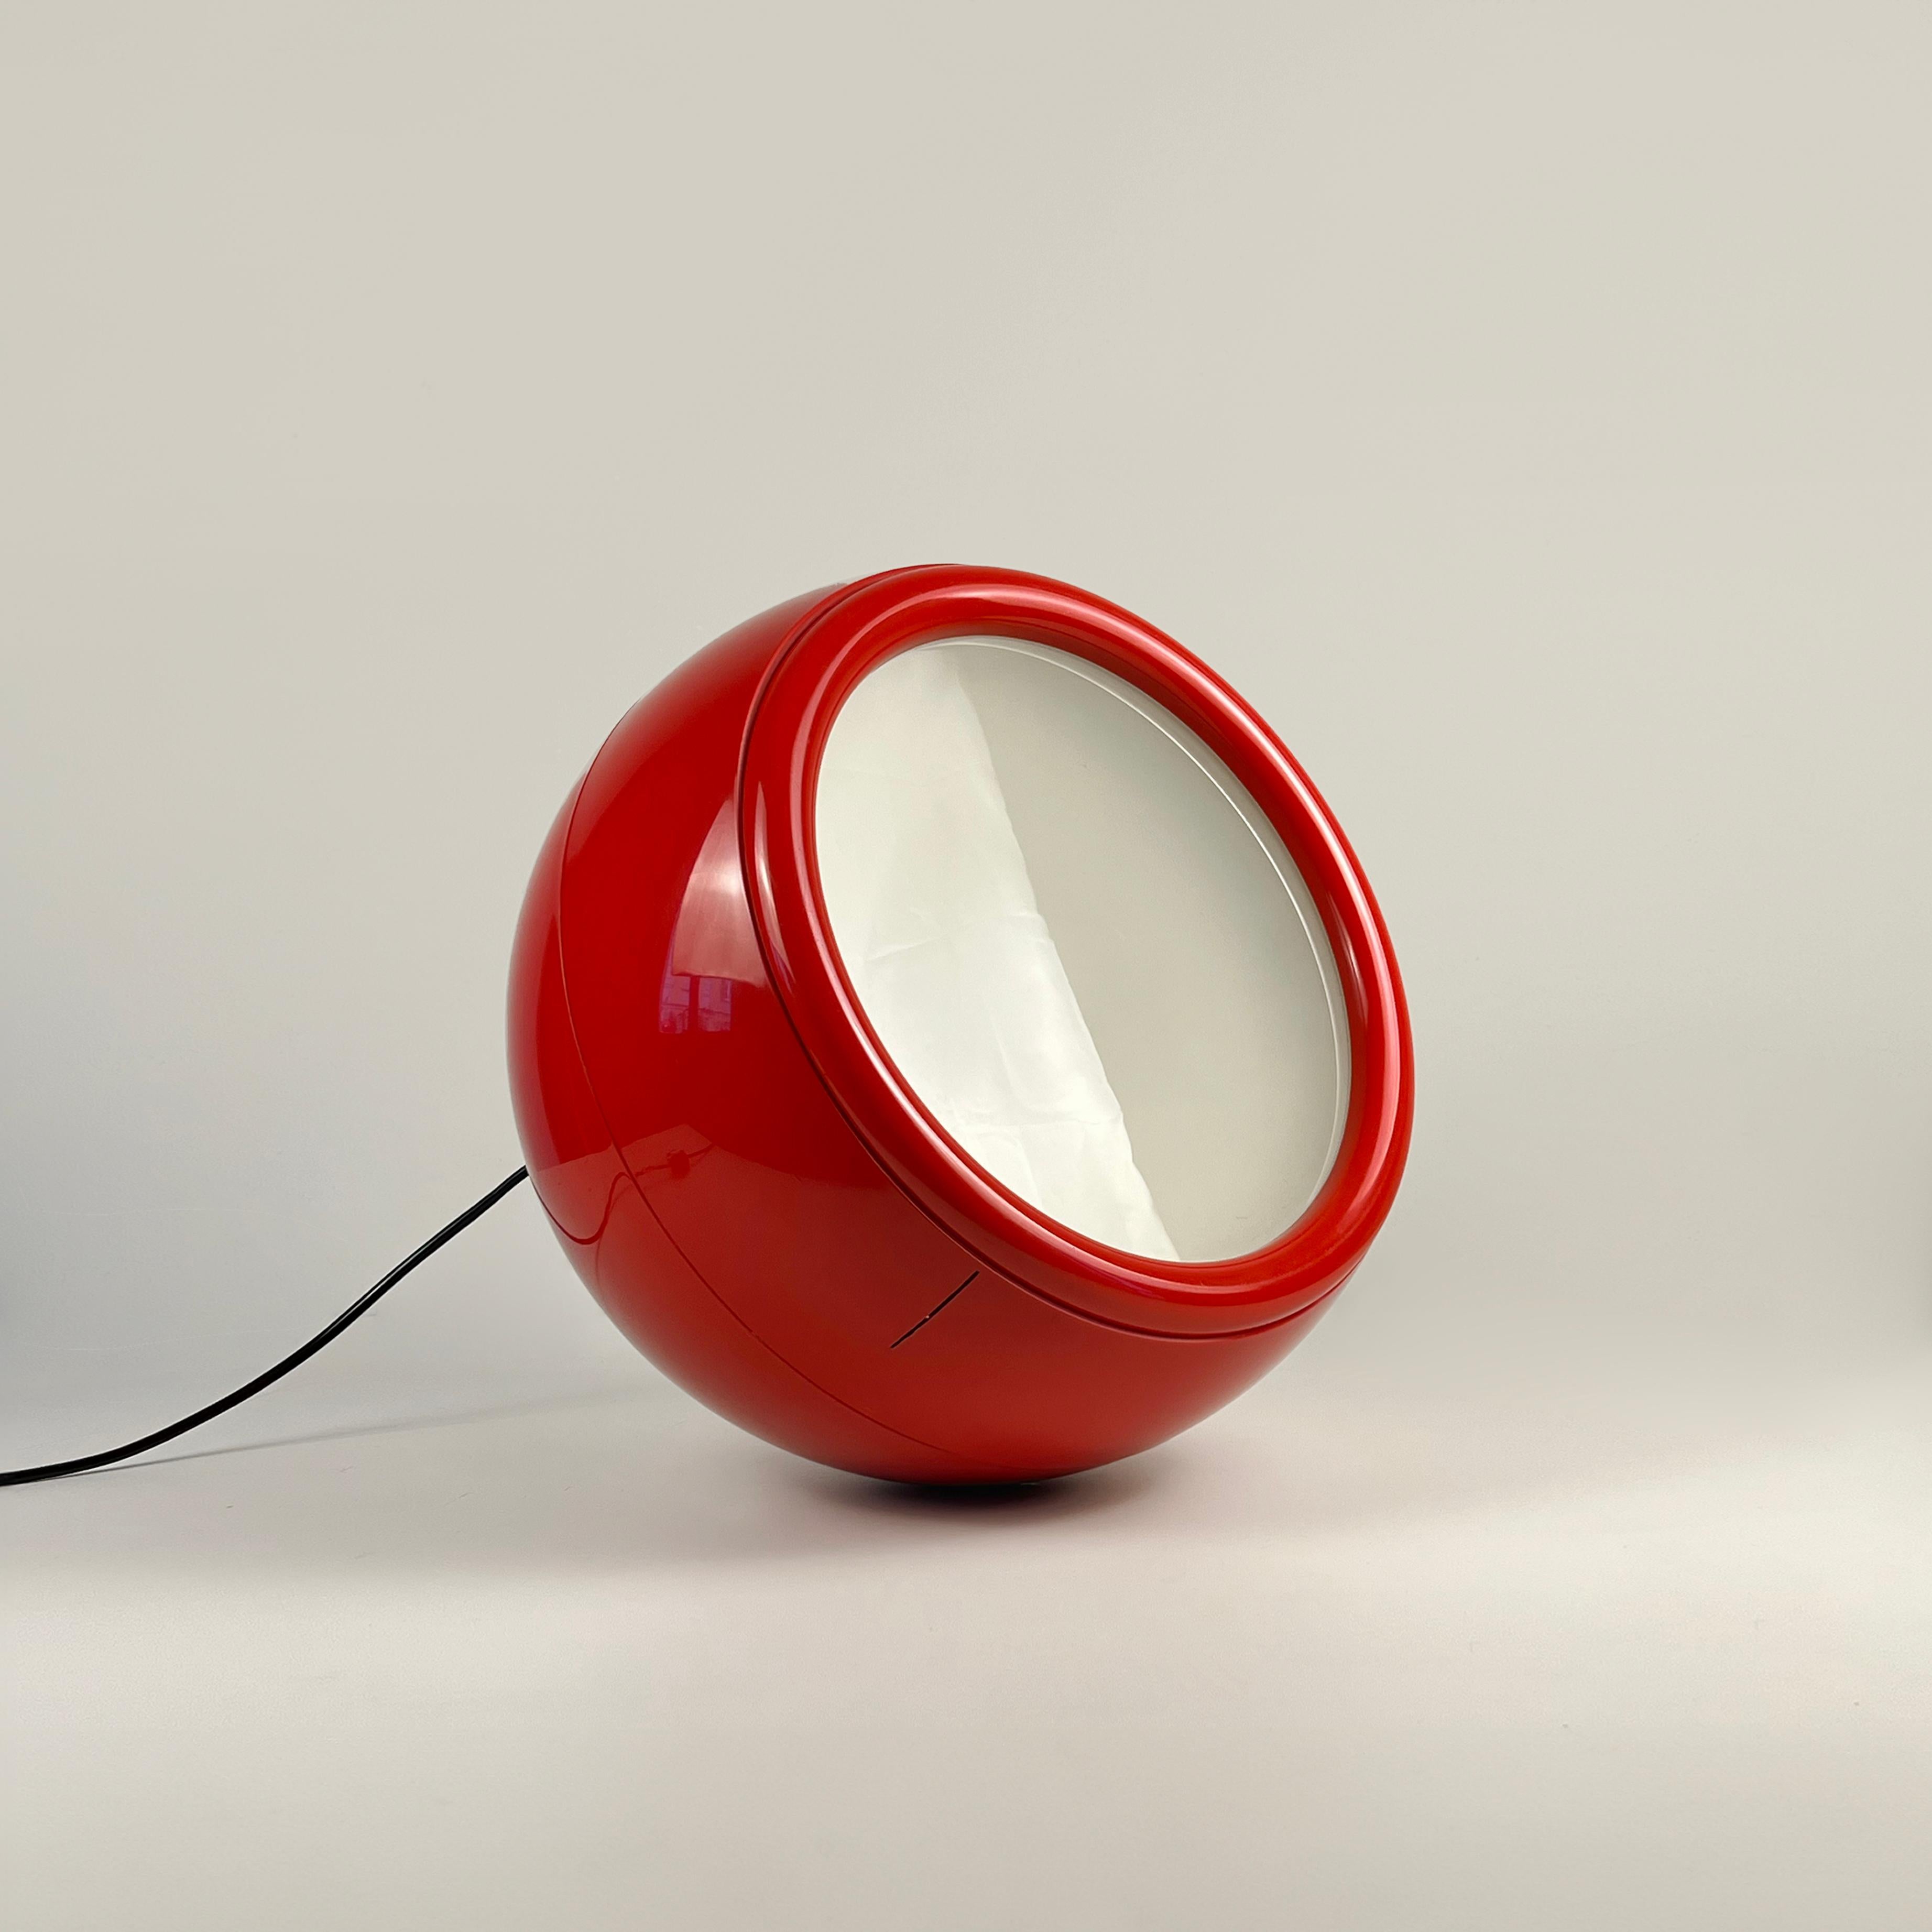 Ce lampadaire Pallade, conçu par le Studio Tetrarch dans les années 1970, est une première édition rare, d'une belle couleur rouge et dotée de son interrupteur d'origine marqué par Artemide

Diamètre : 40 cm (15in)
Douille E27
